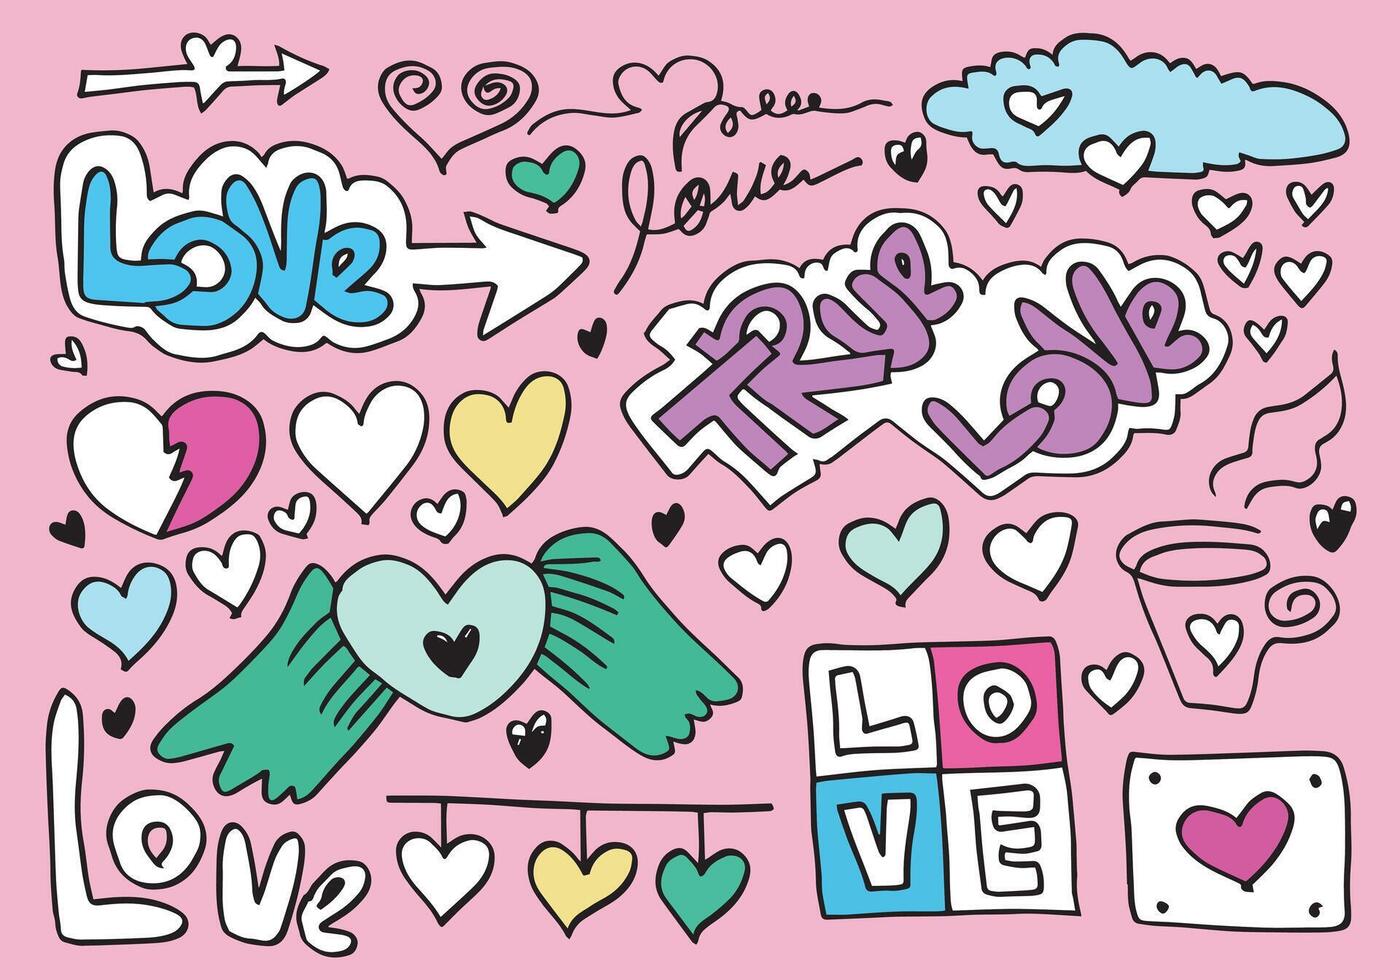 rabiscos desenhados à mão para o dia dos namorados. coleção de lindos corações e escritos amor em fundo rosa. ilustração vetorial. vetor